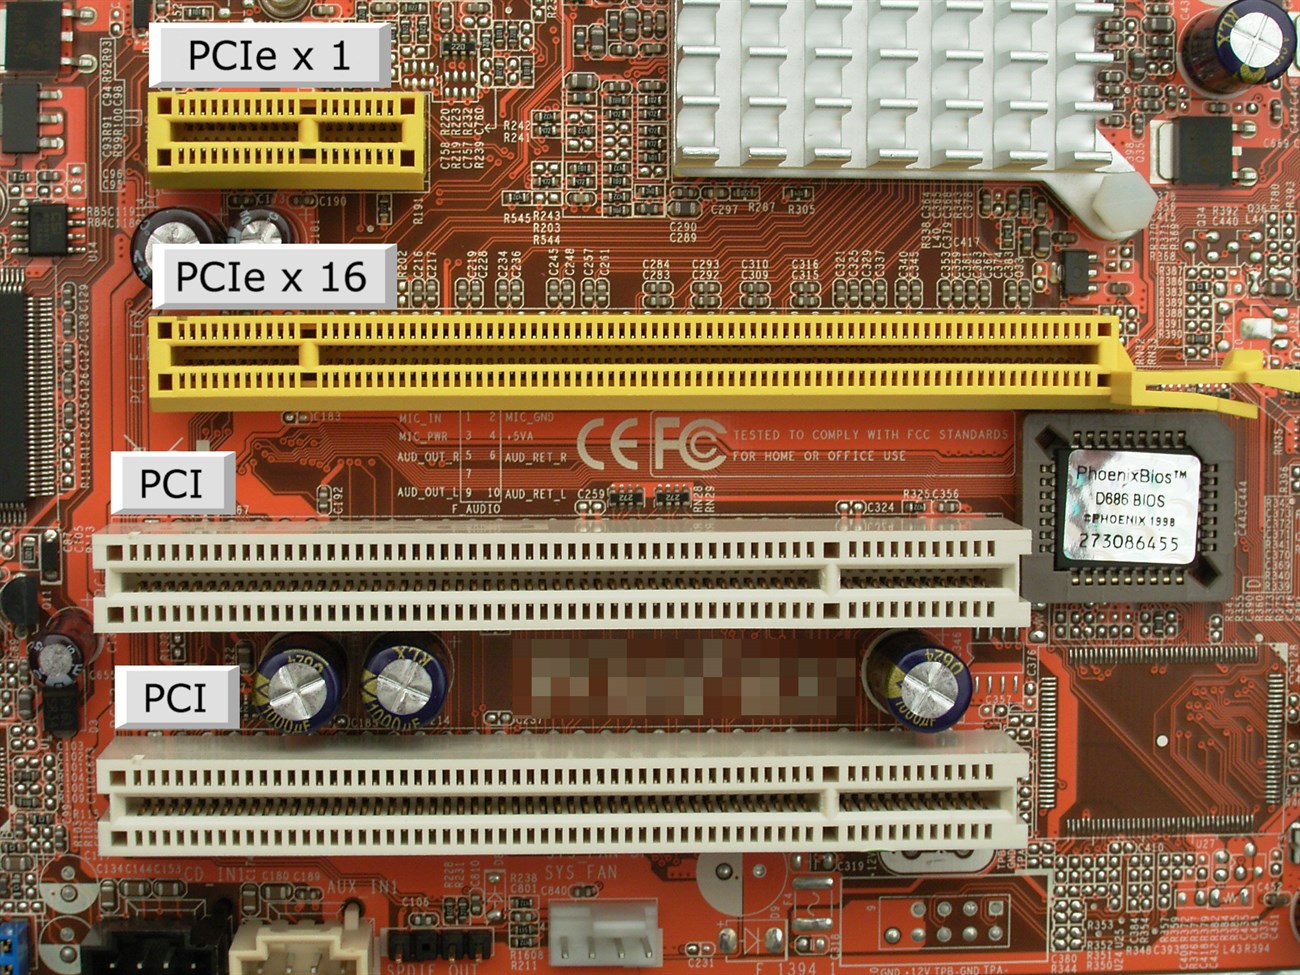 Khe cắm PCI Express được phát hành vào năm 2004, thay thế cho PCI